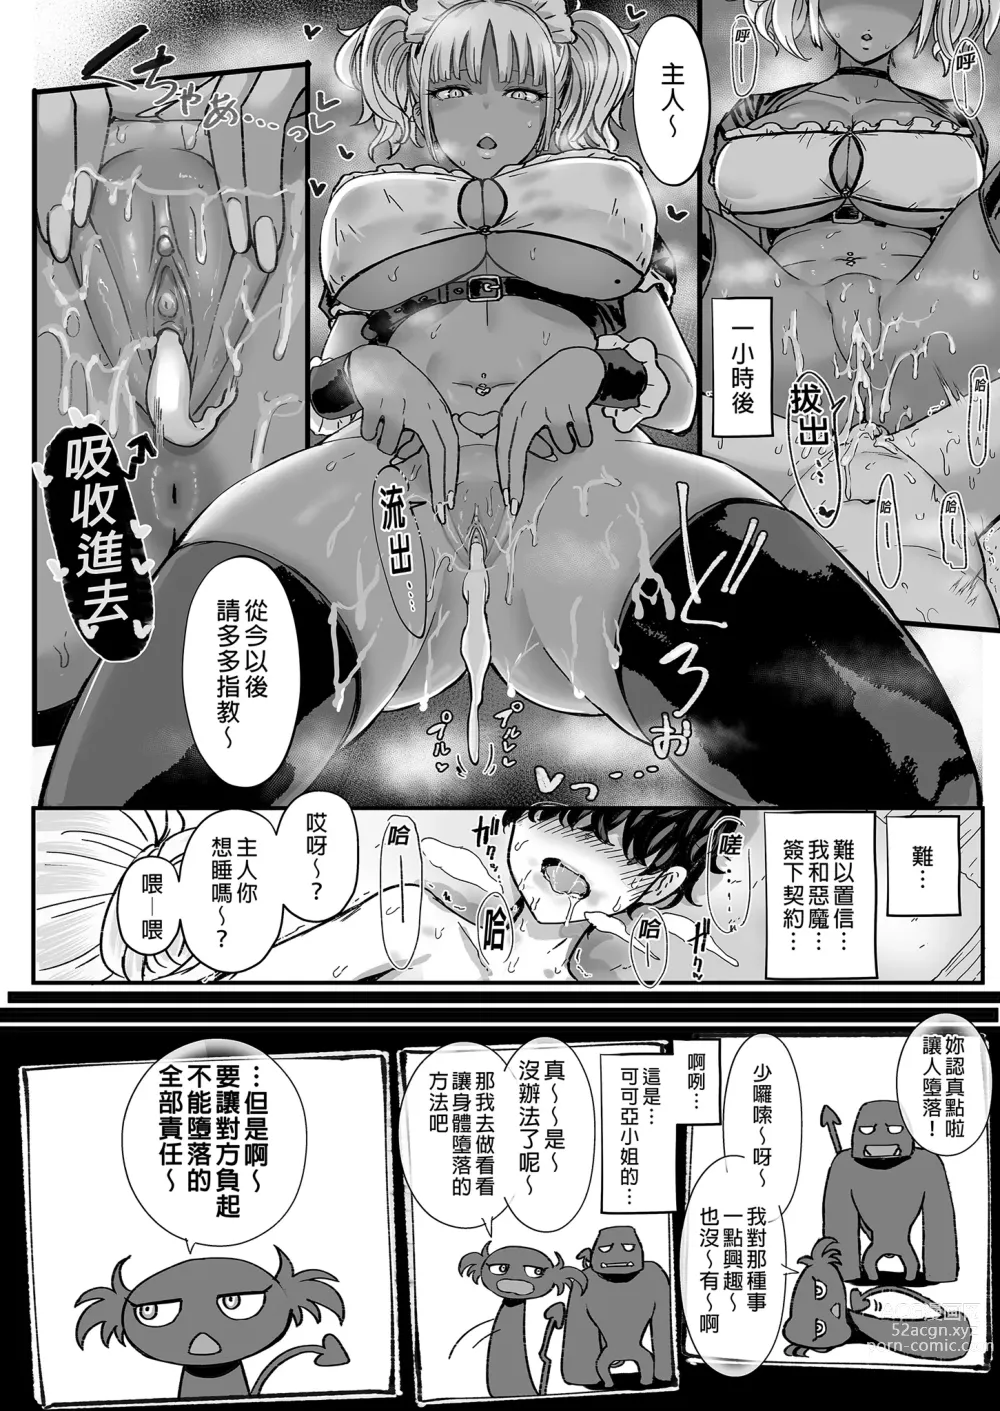 Page 8 of doujinshi 享用主人的黑辣妹女僕淫魔。 (decensored)